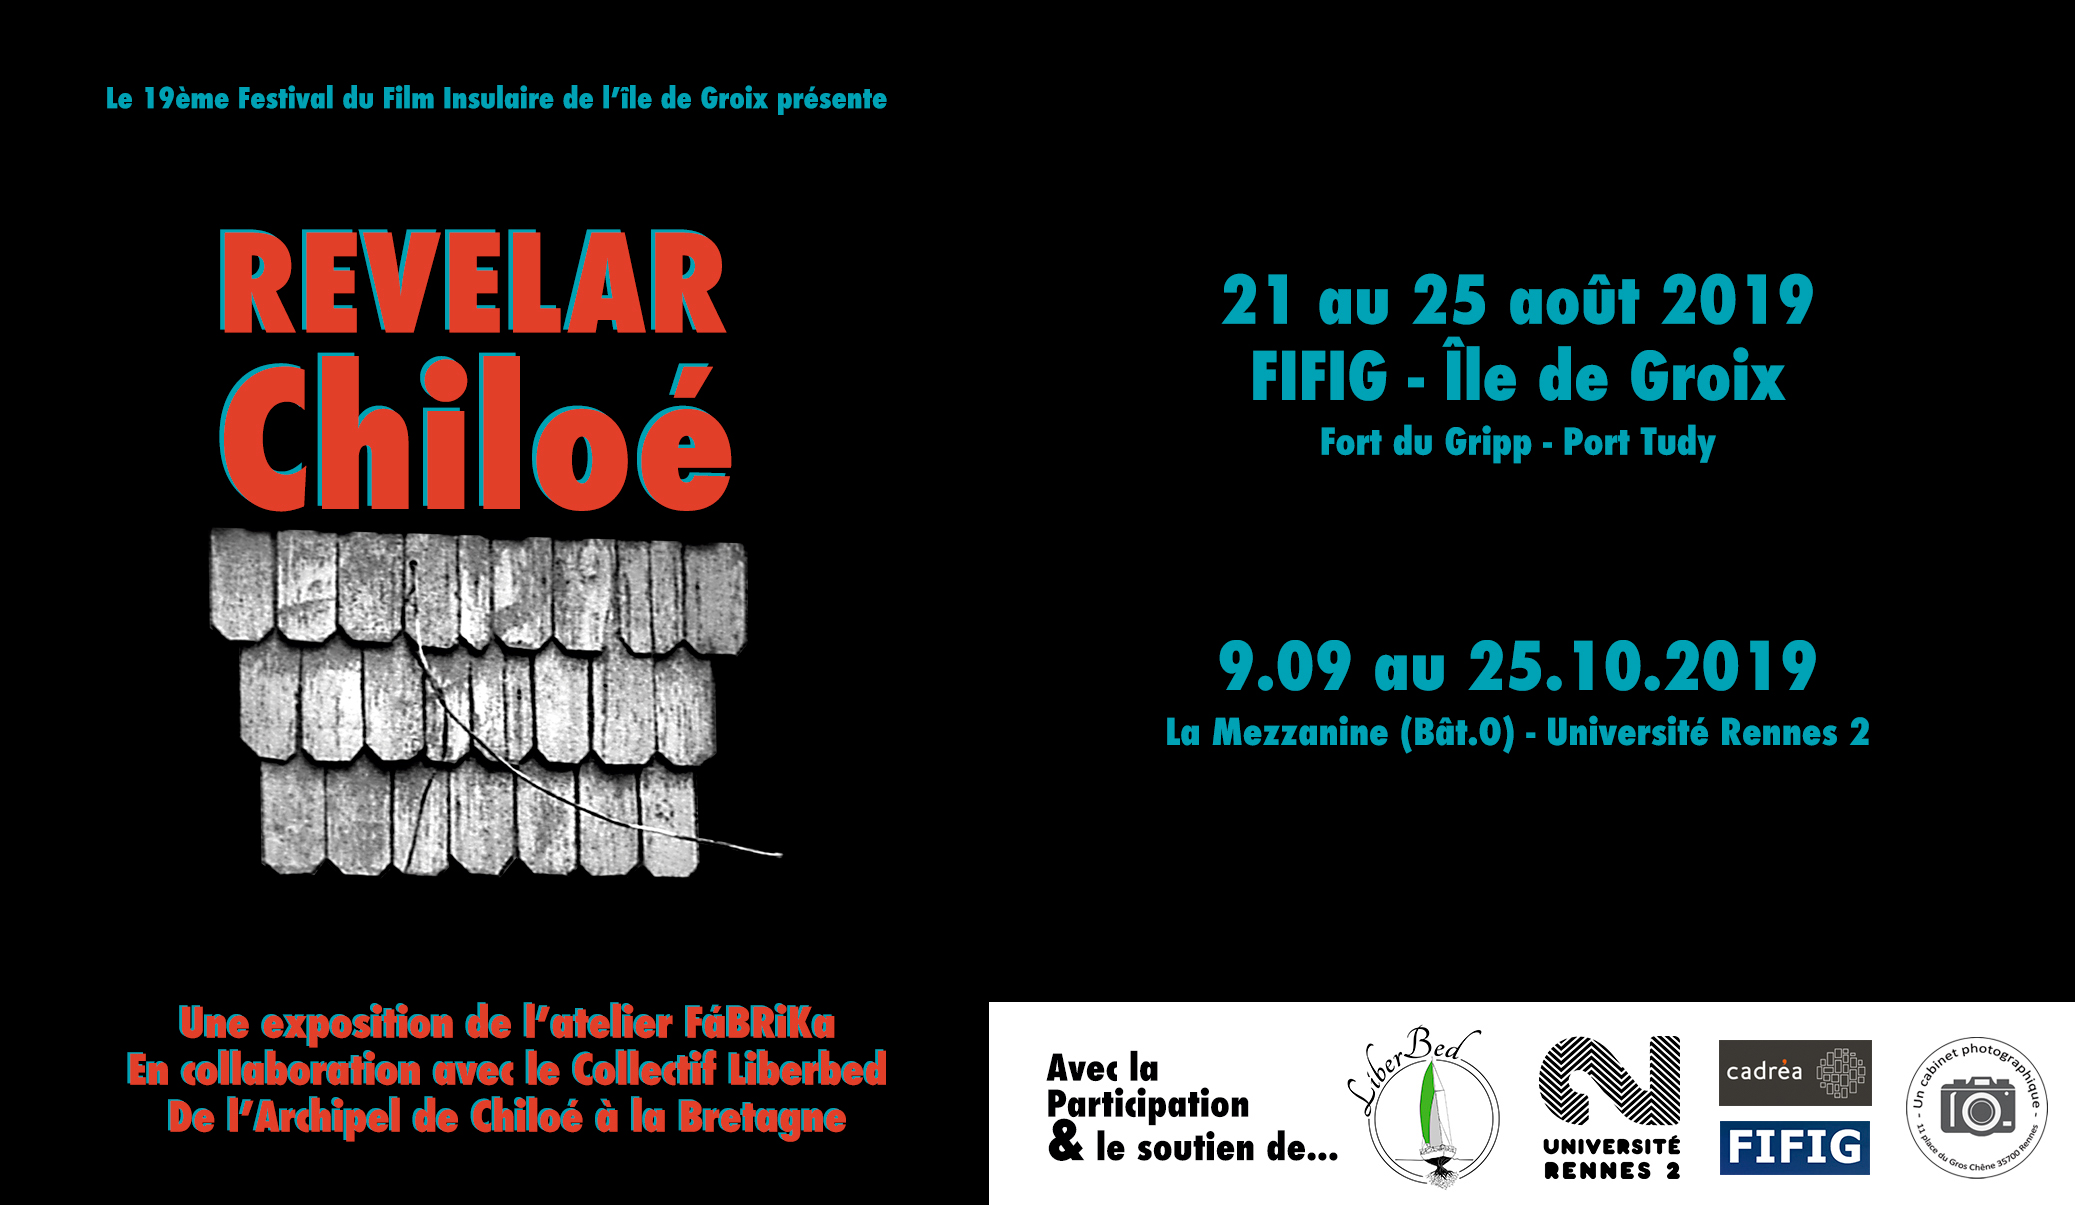 Revelar Chiloé – FIFIG & Rennes 2